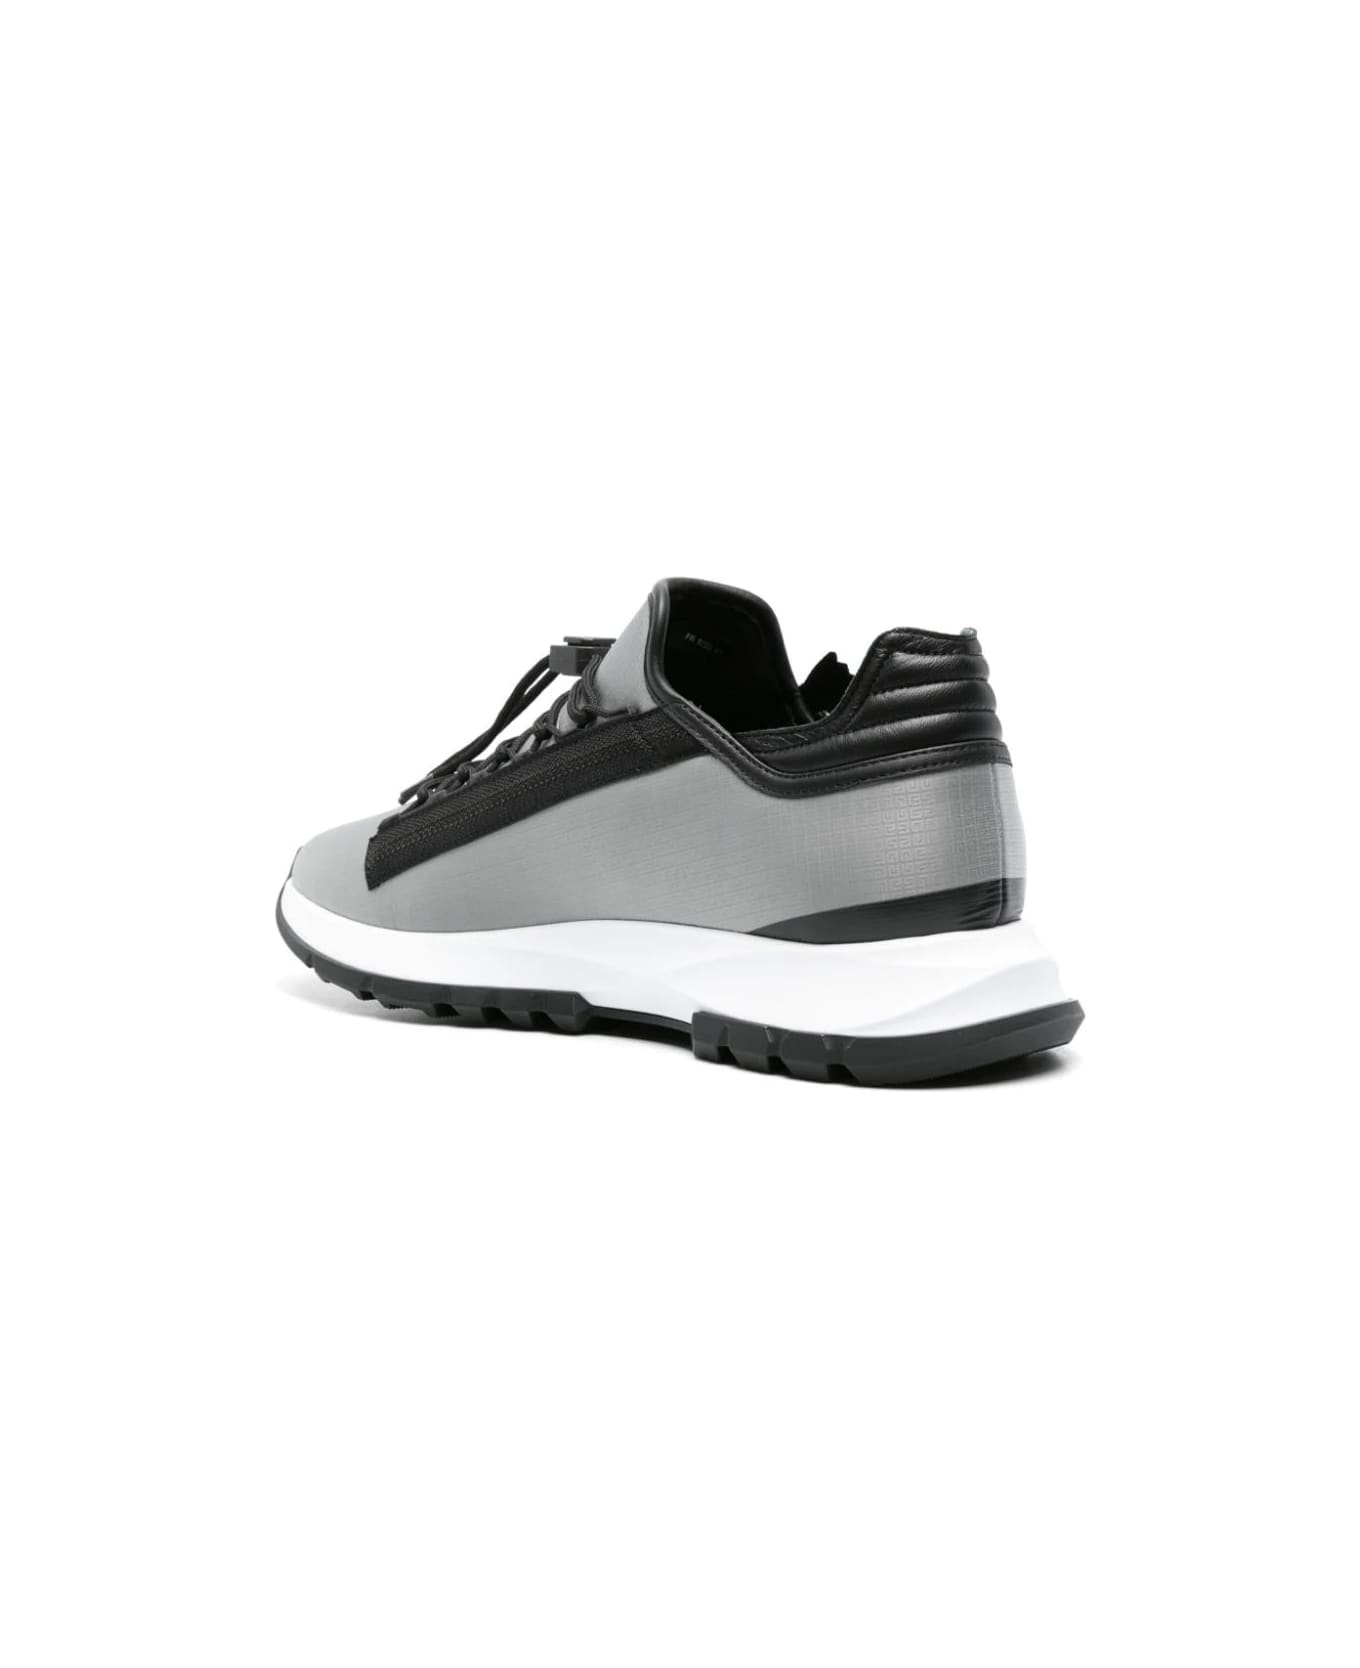 Specter Running Sneakers In Black 4g Nylon With Zip - 3